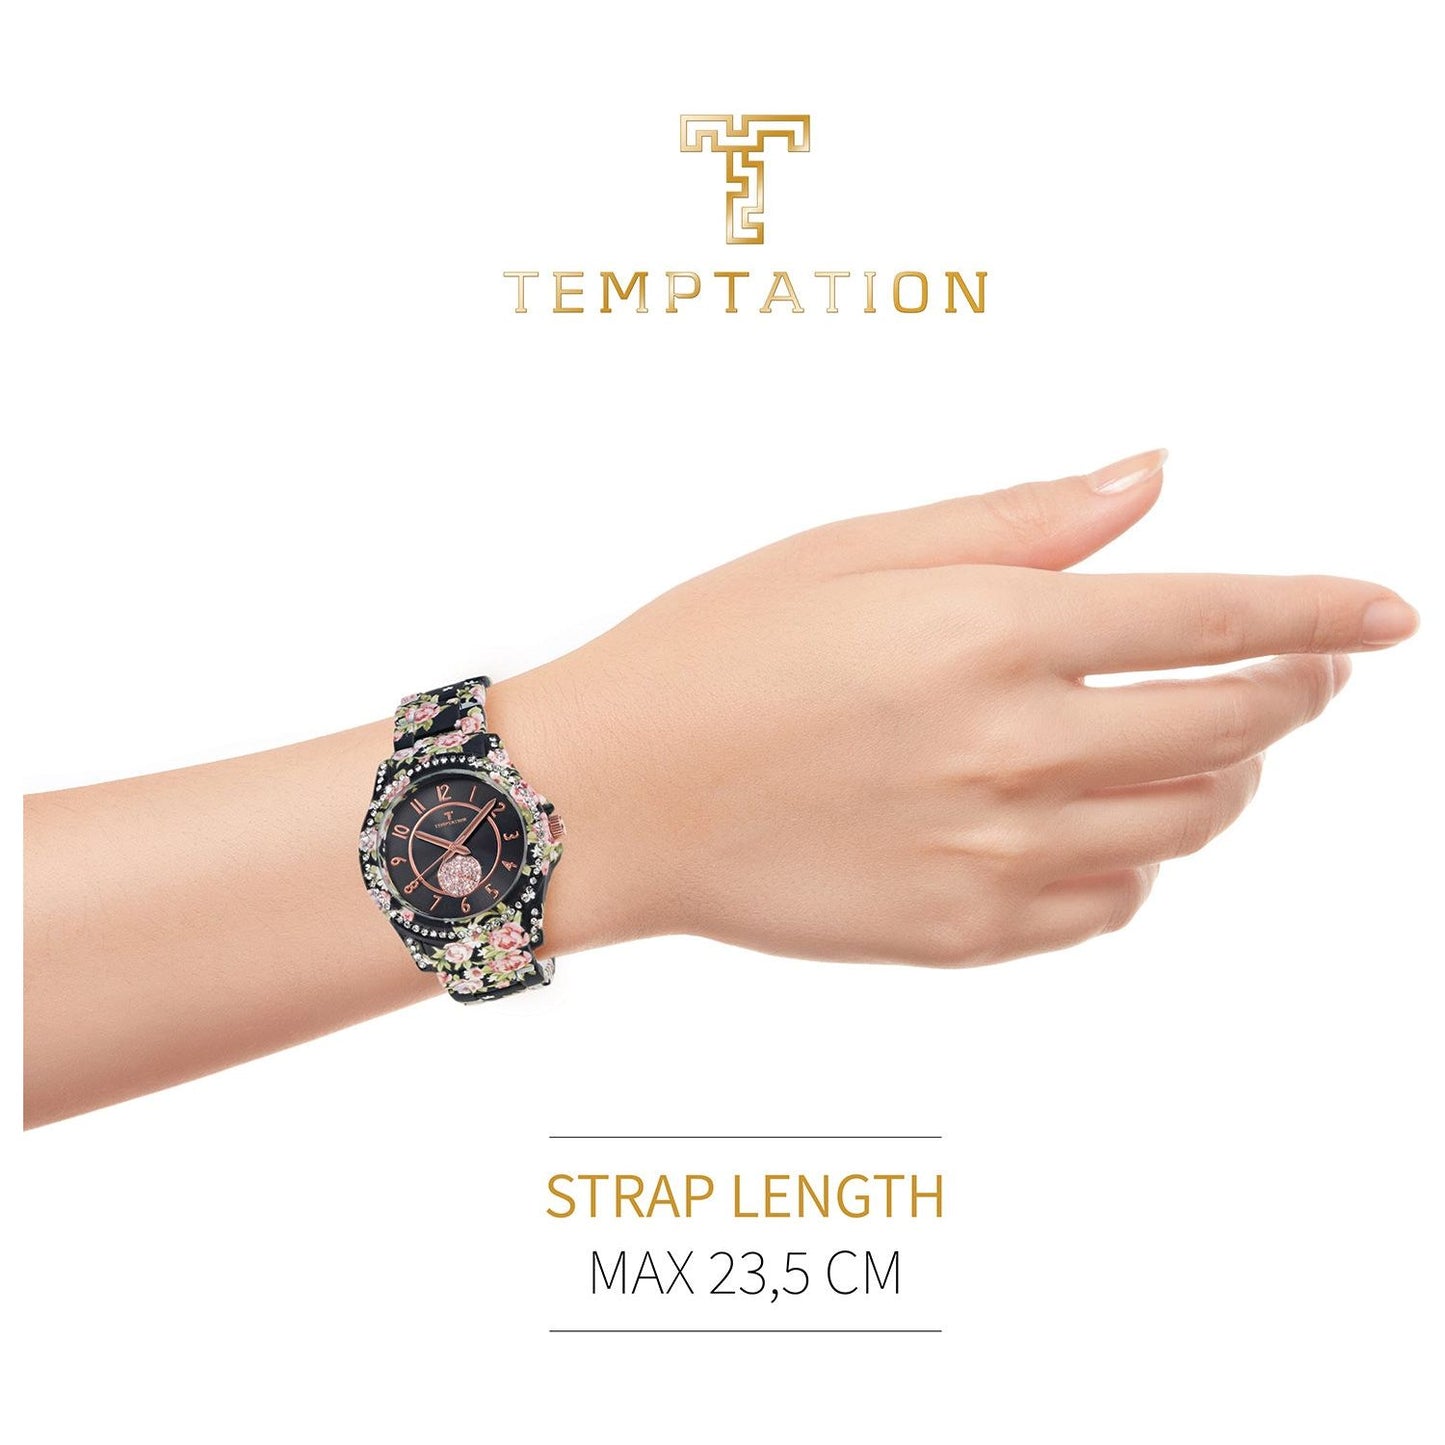 TEMPTATION TEMPTATION MOD. TEA-2015-08 WATCHES temptation-mod-tea-2015-8